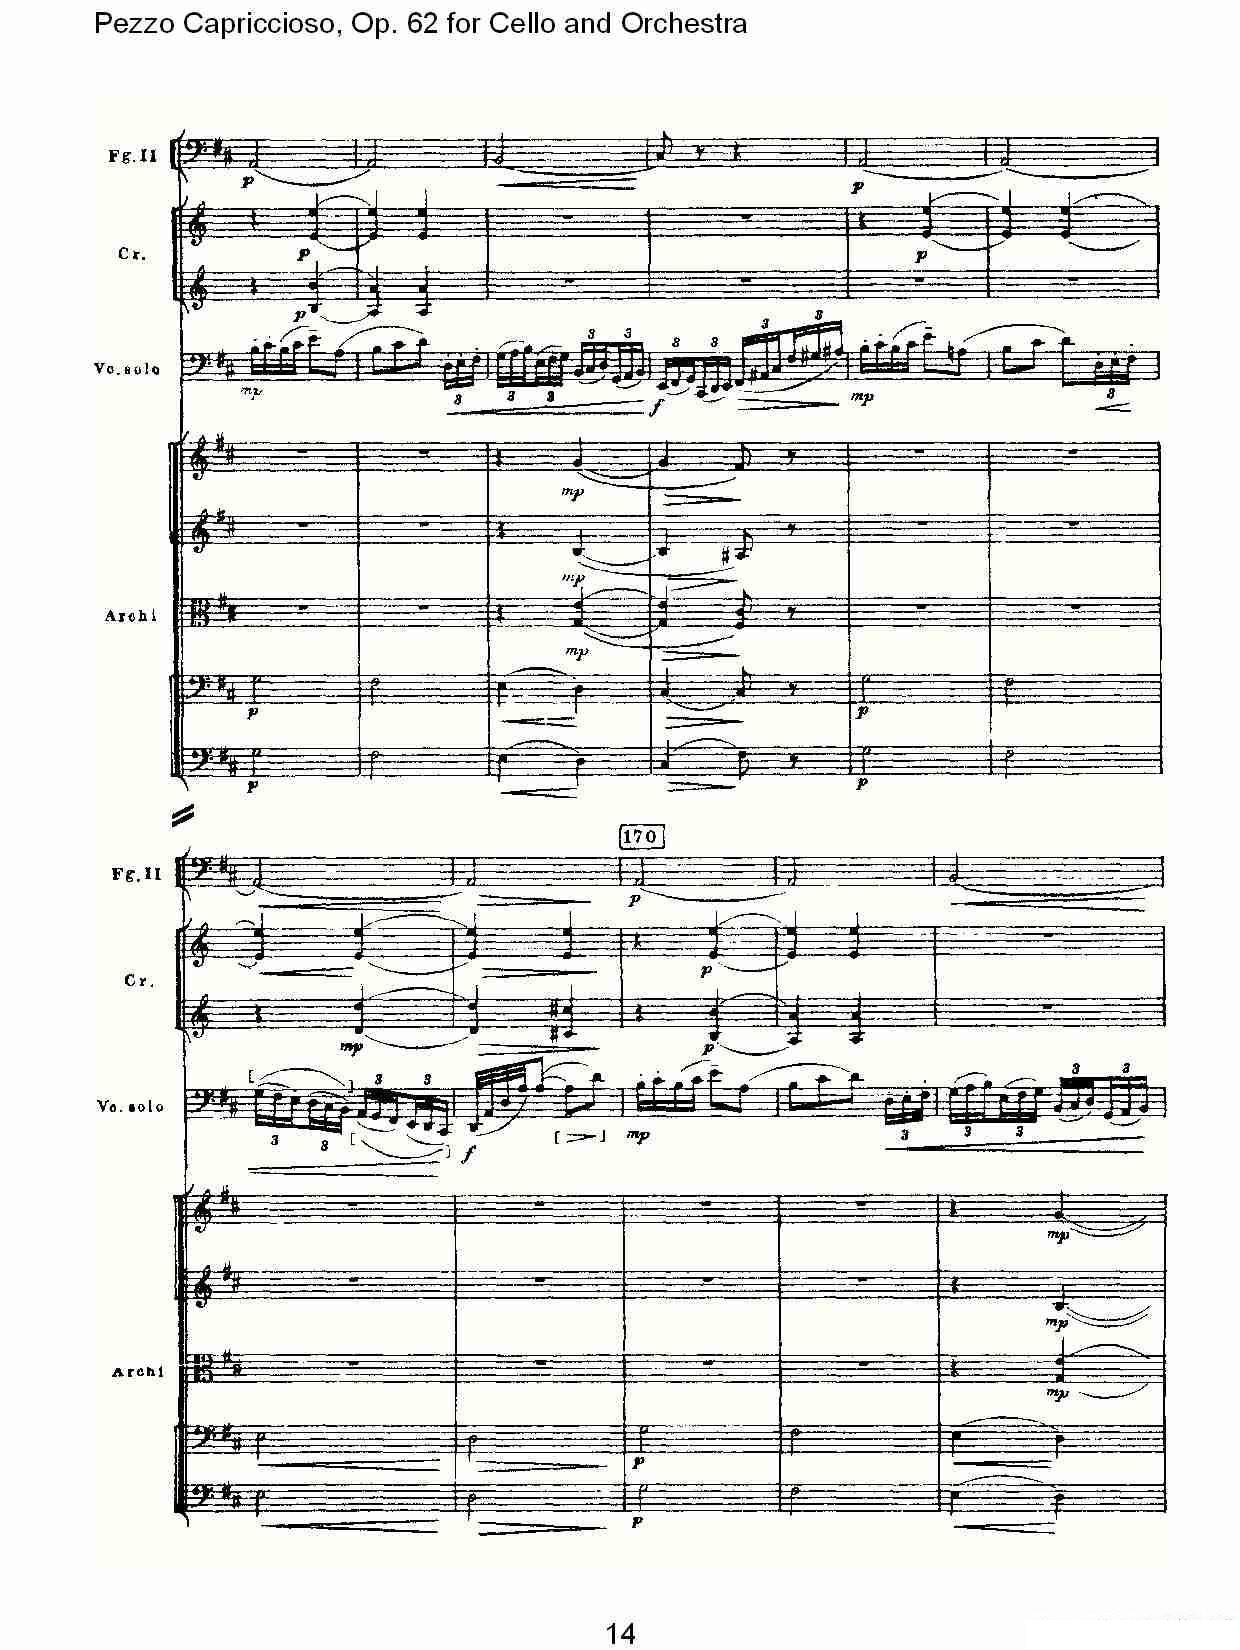 彼得·伊利奇·柴可夫斯基《Pezzo Capriccioso, Op.62》提琴谱（第14页）